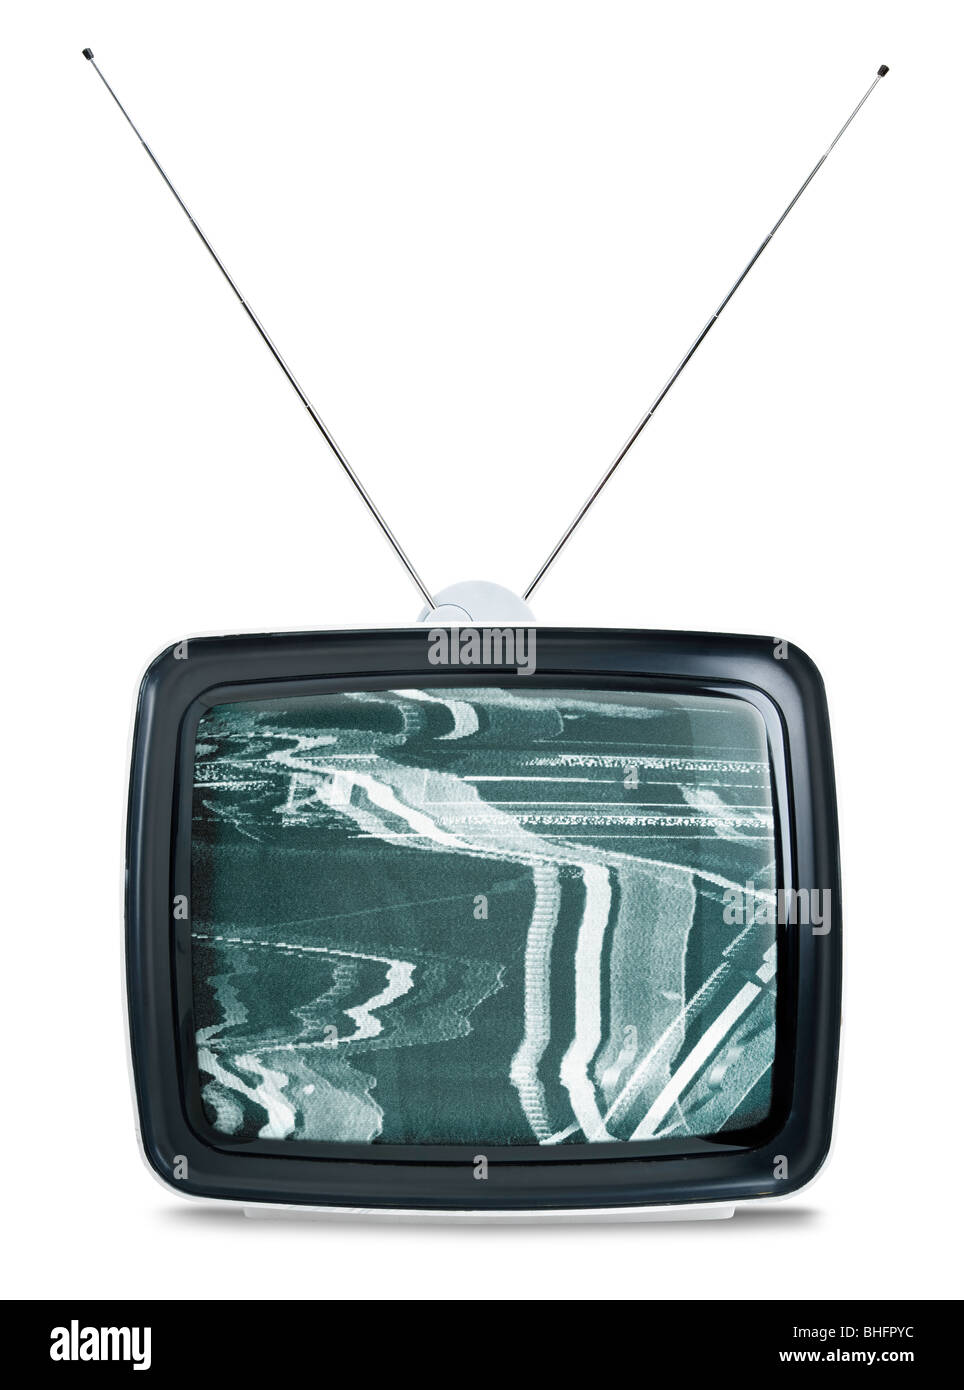 Vintage années 60 téléviseur isolé sur fond blanc Banque D'Images